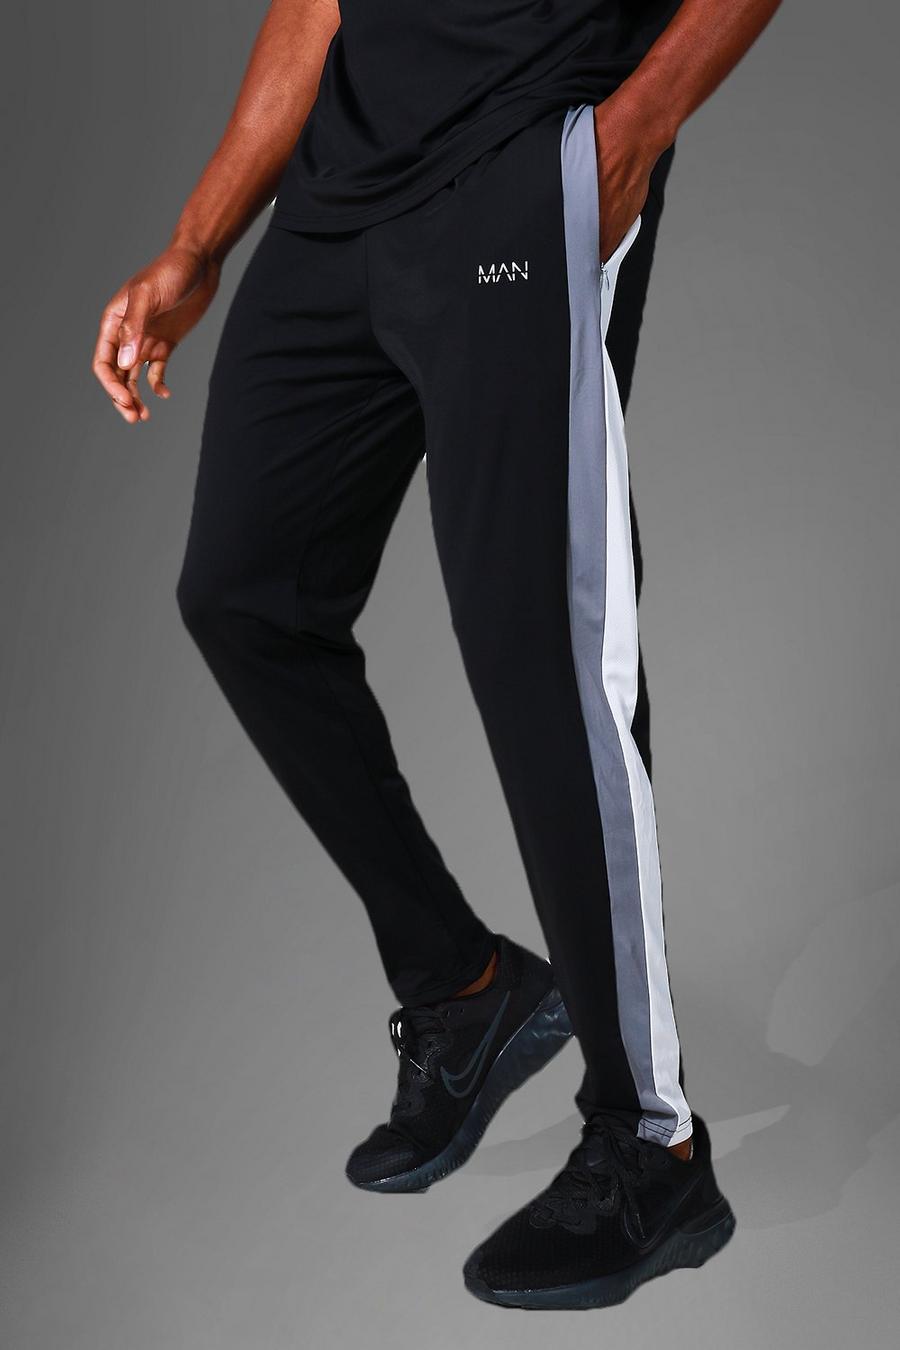 Pantalón deportivo MAN Active resistente con colores en bloque, Black negro image number 1